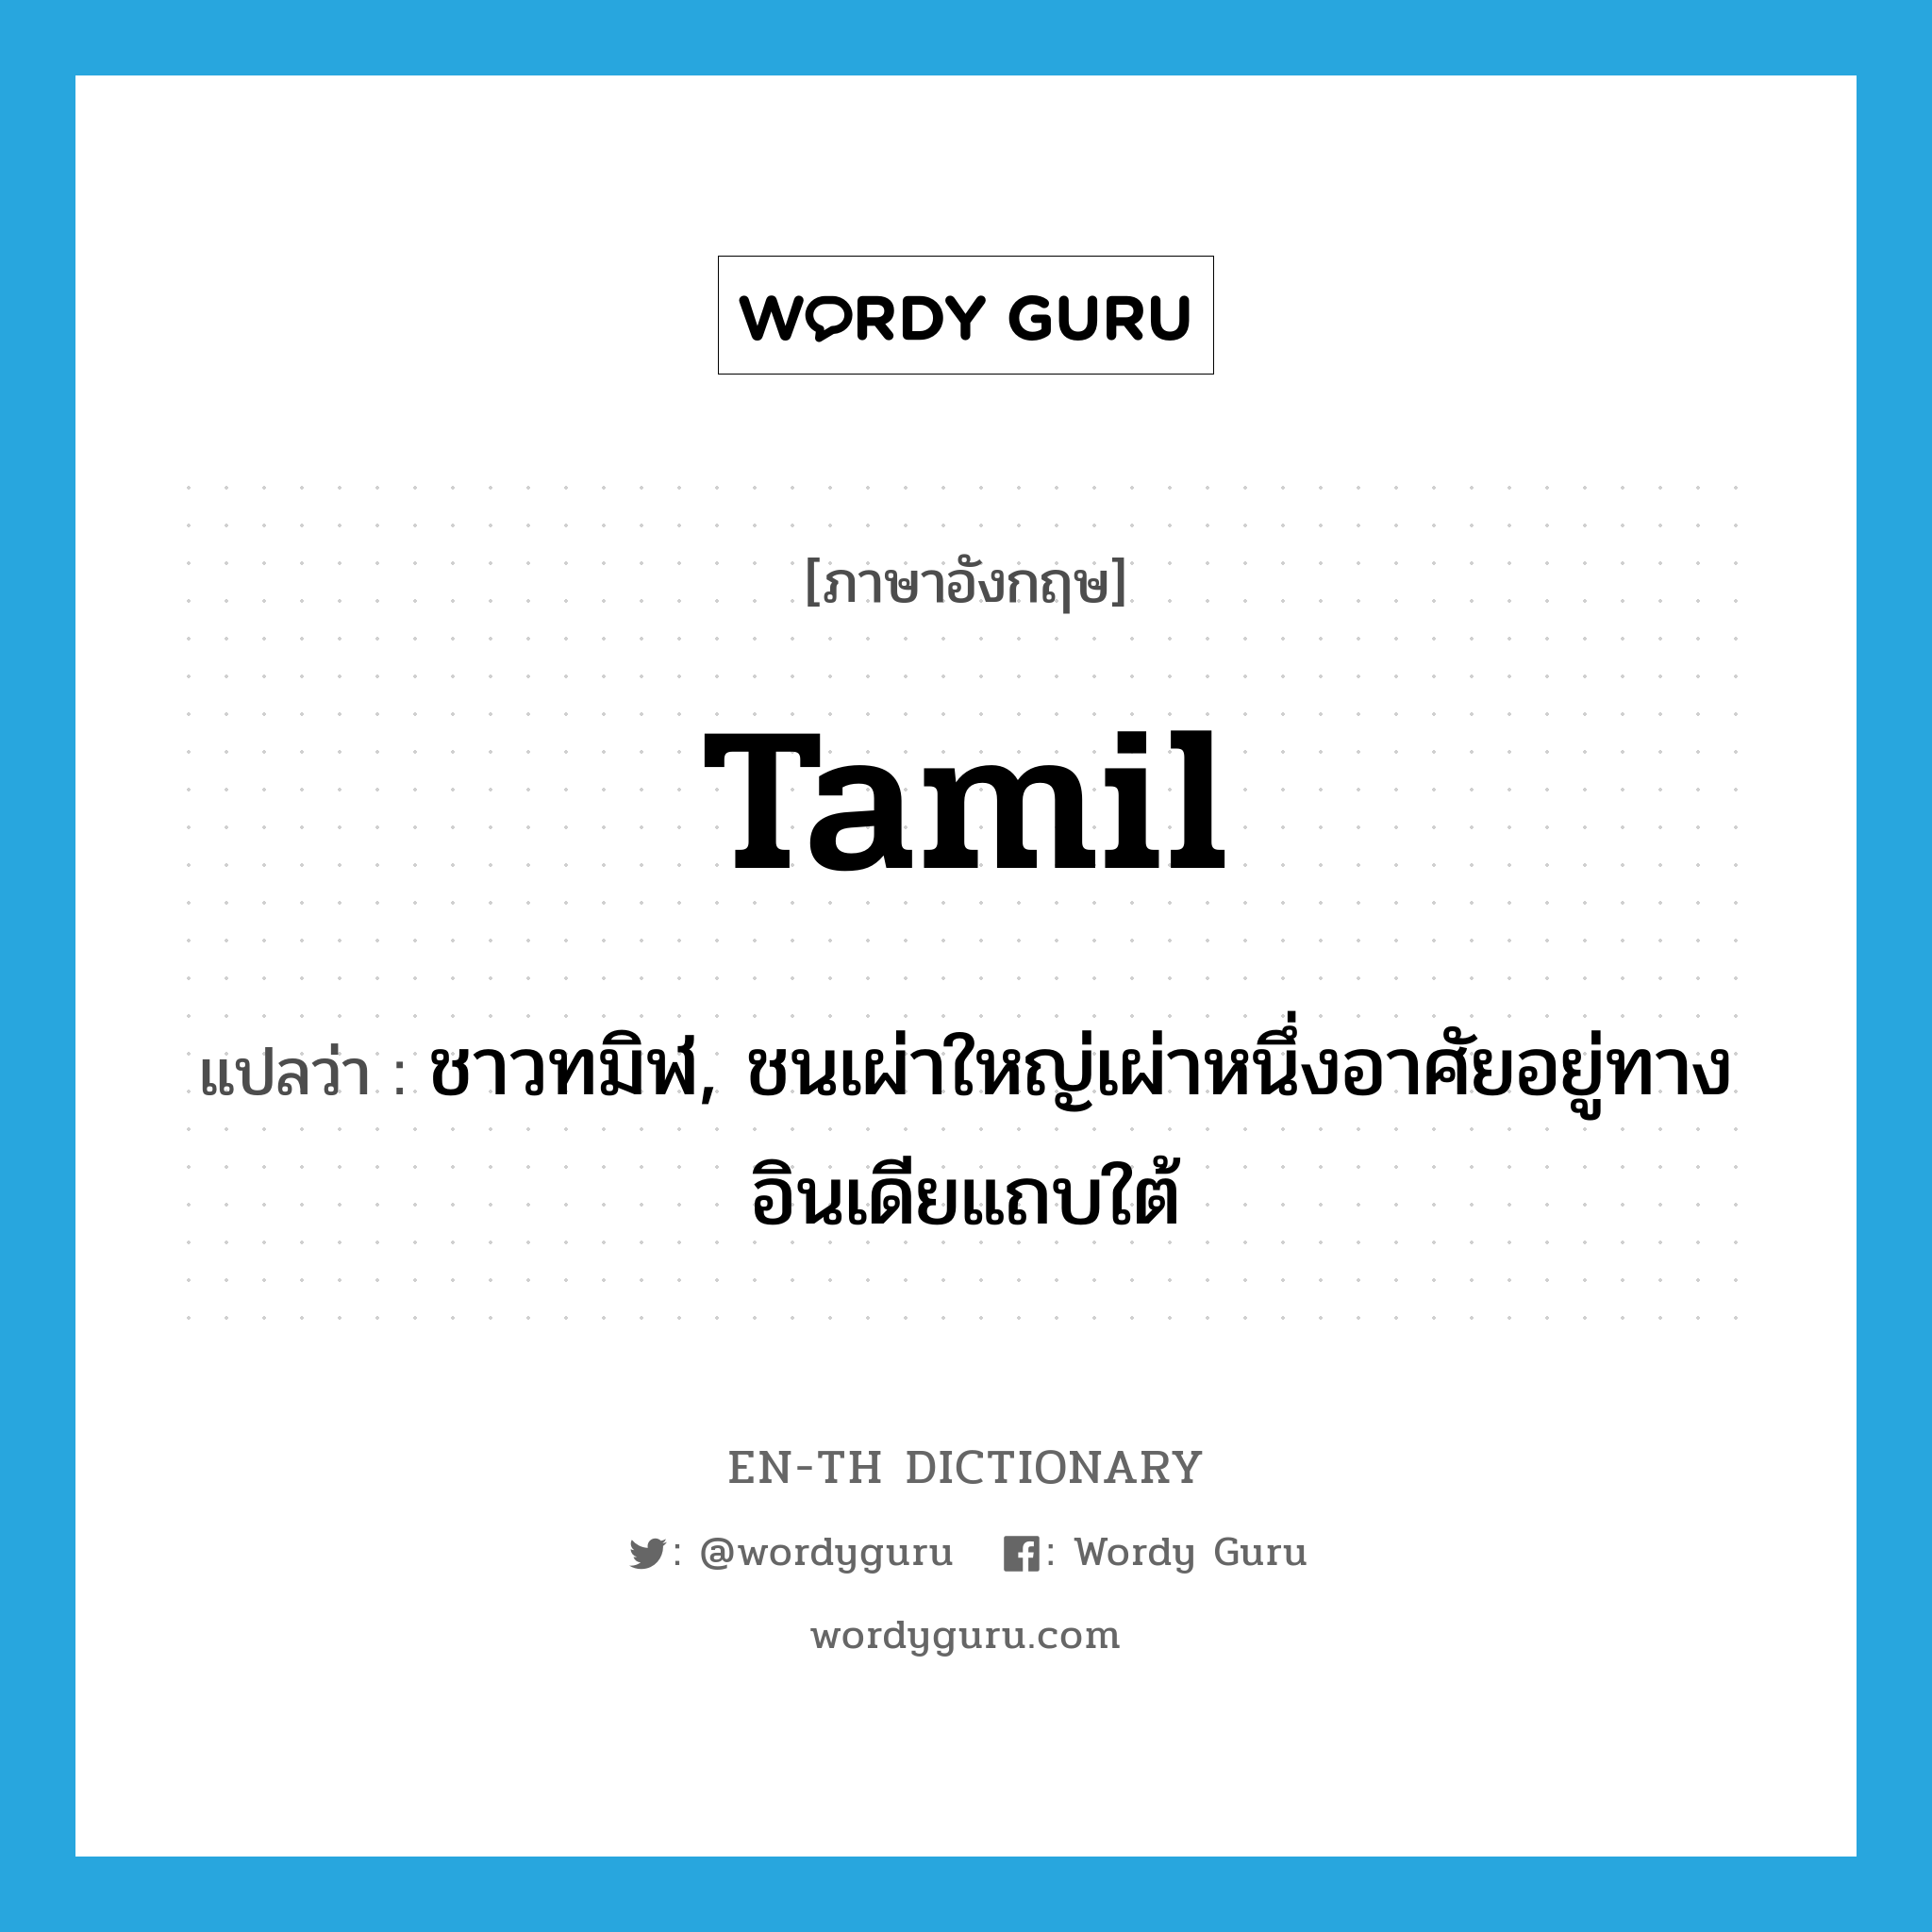 Tamil แปลว่า?, คำศัพท์ภาษาอังกฤษ Tamil แปลว่า ชาวทมิฬ, ชนเผ่าใหญ่เผ่าหนึ่งอาศัยอยู่ทางอินเดียแถบใต้ ประเภท N หมวด N